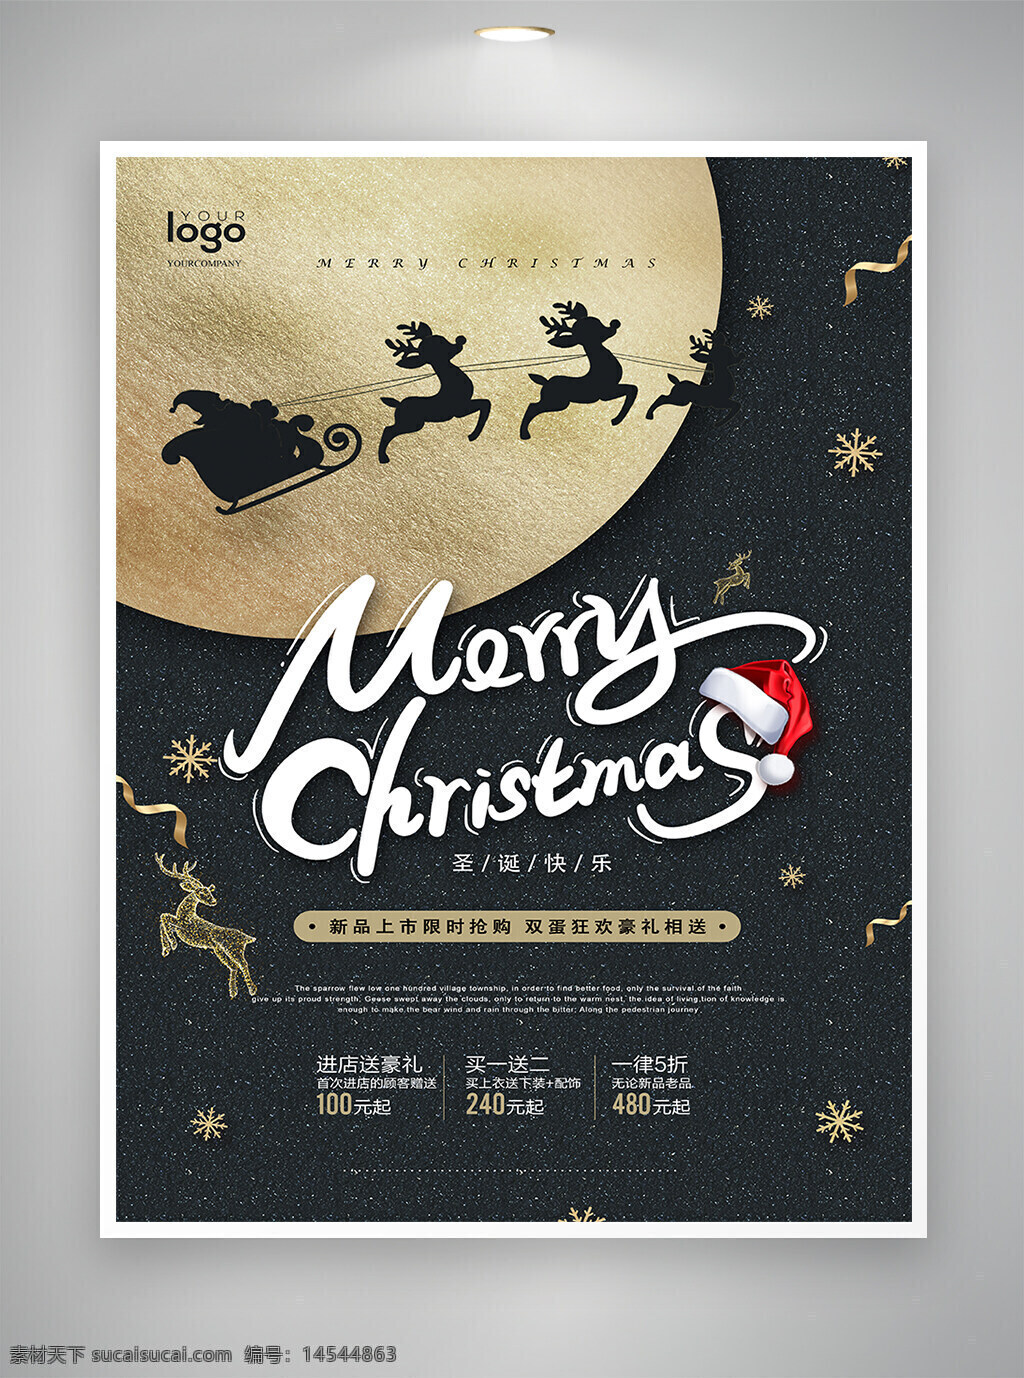 圣诞 圣诞节 圣诞海报 圣诞节海报 优惠促销 促销宣传 促销海报 宣传海报 海报 黑金风